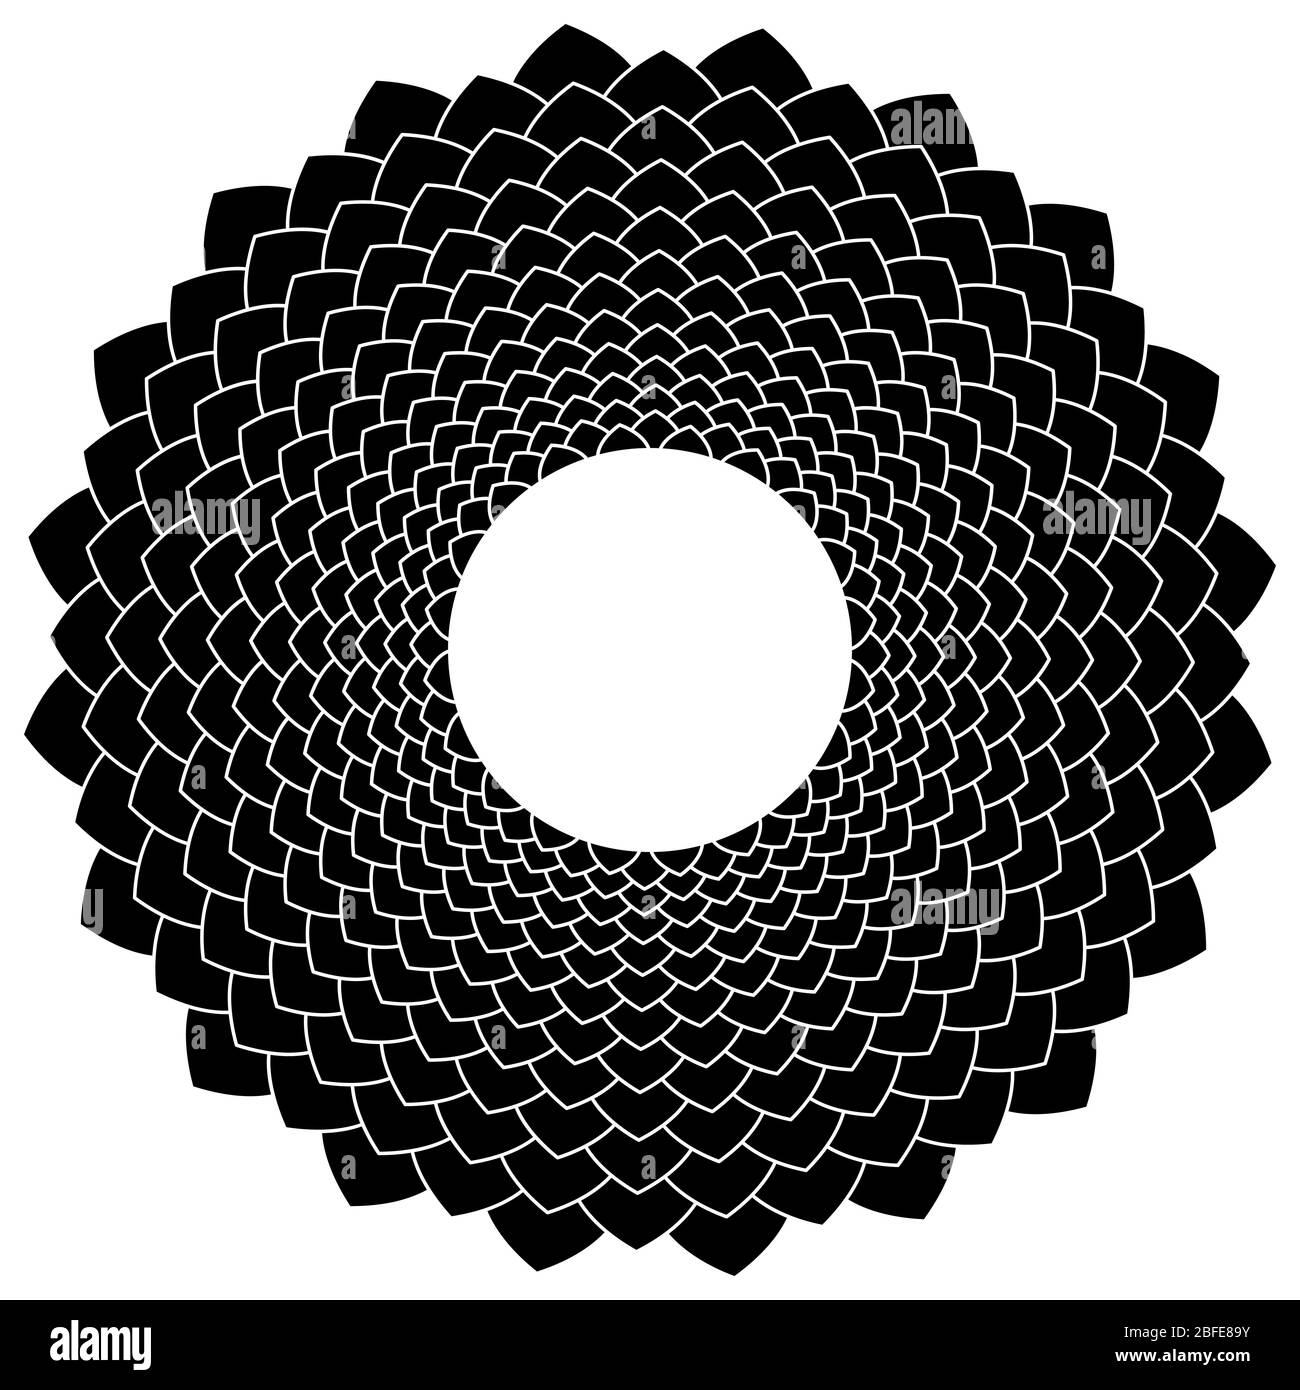 Abstraktes Schwarz-Weiß-Blumensymbol. Blütenblätter Formen ein Blume wie Zeichen mit einem weißen Kreis in der Mitte. Isolierte Darstellung. Stockfoto